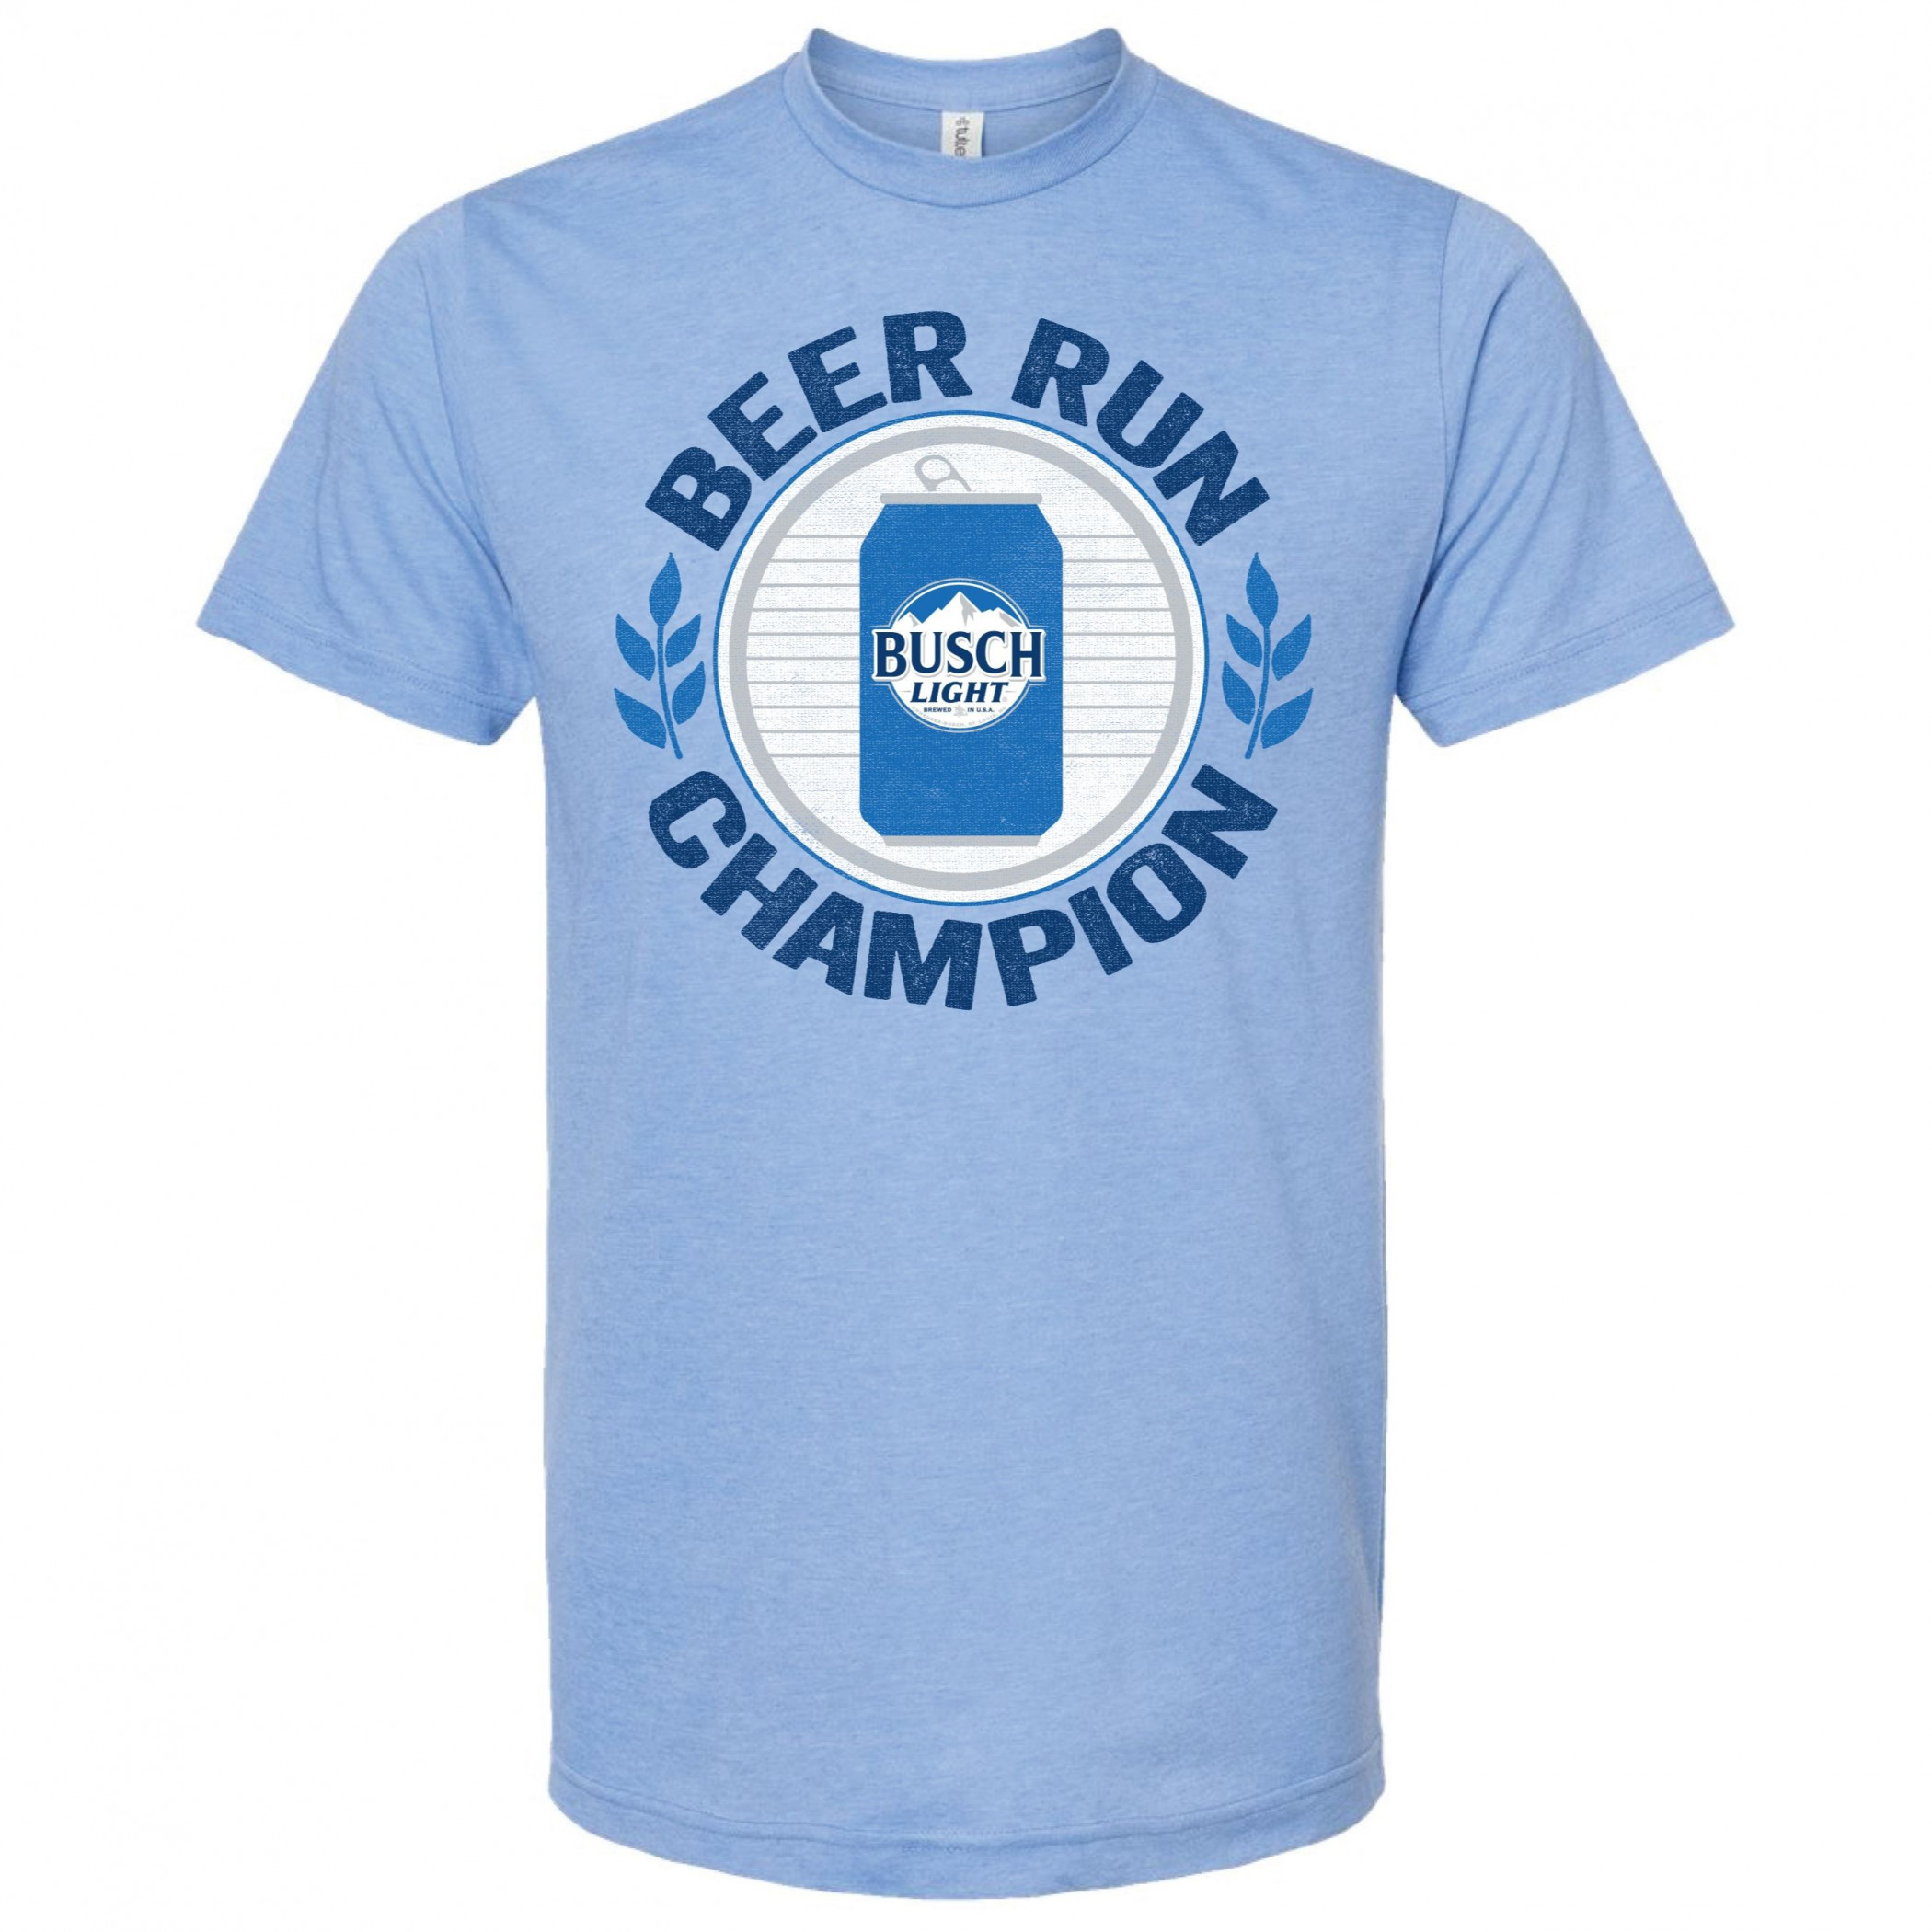 Busch Light Beer Run Champion T-Shirt